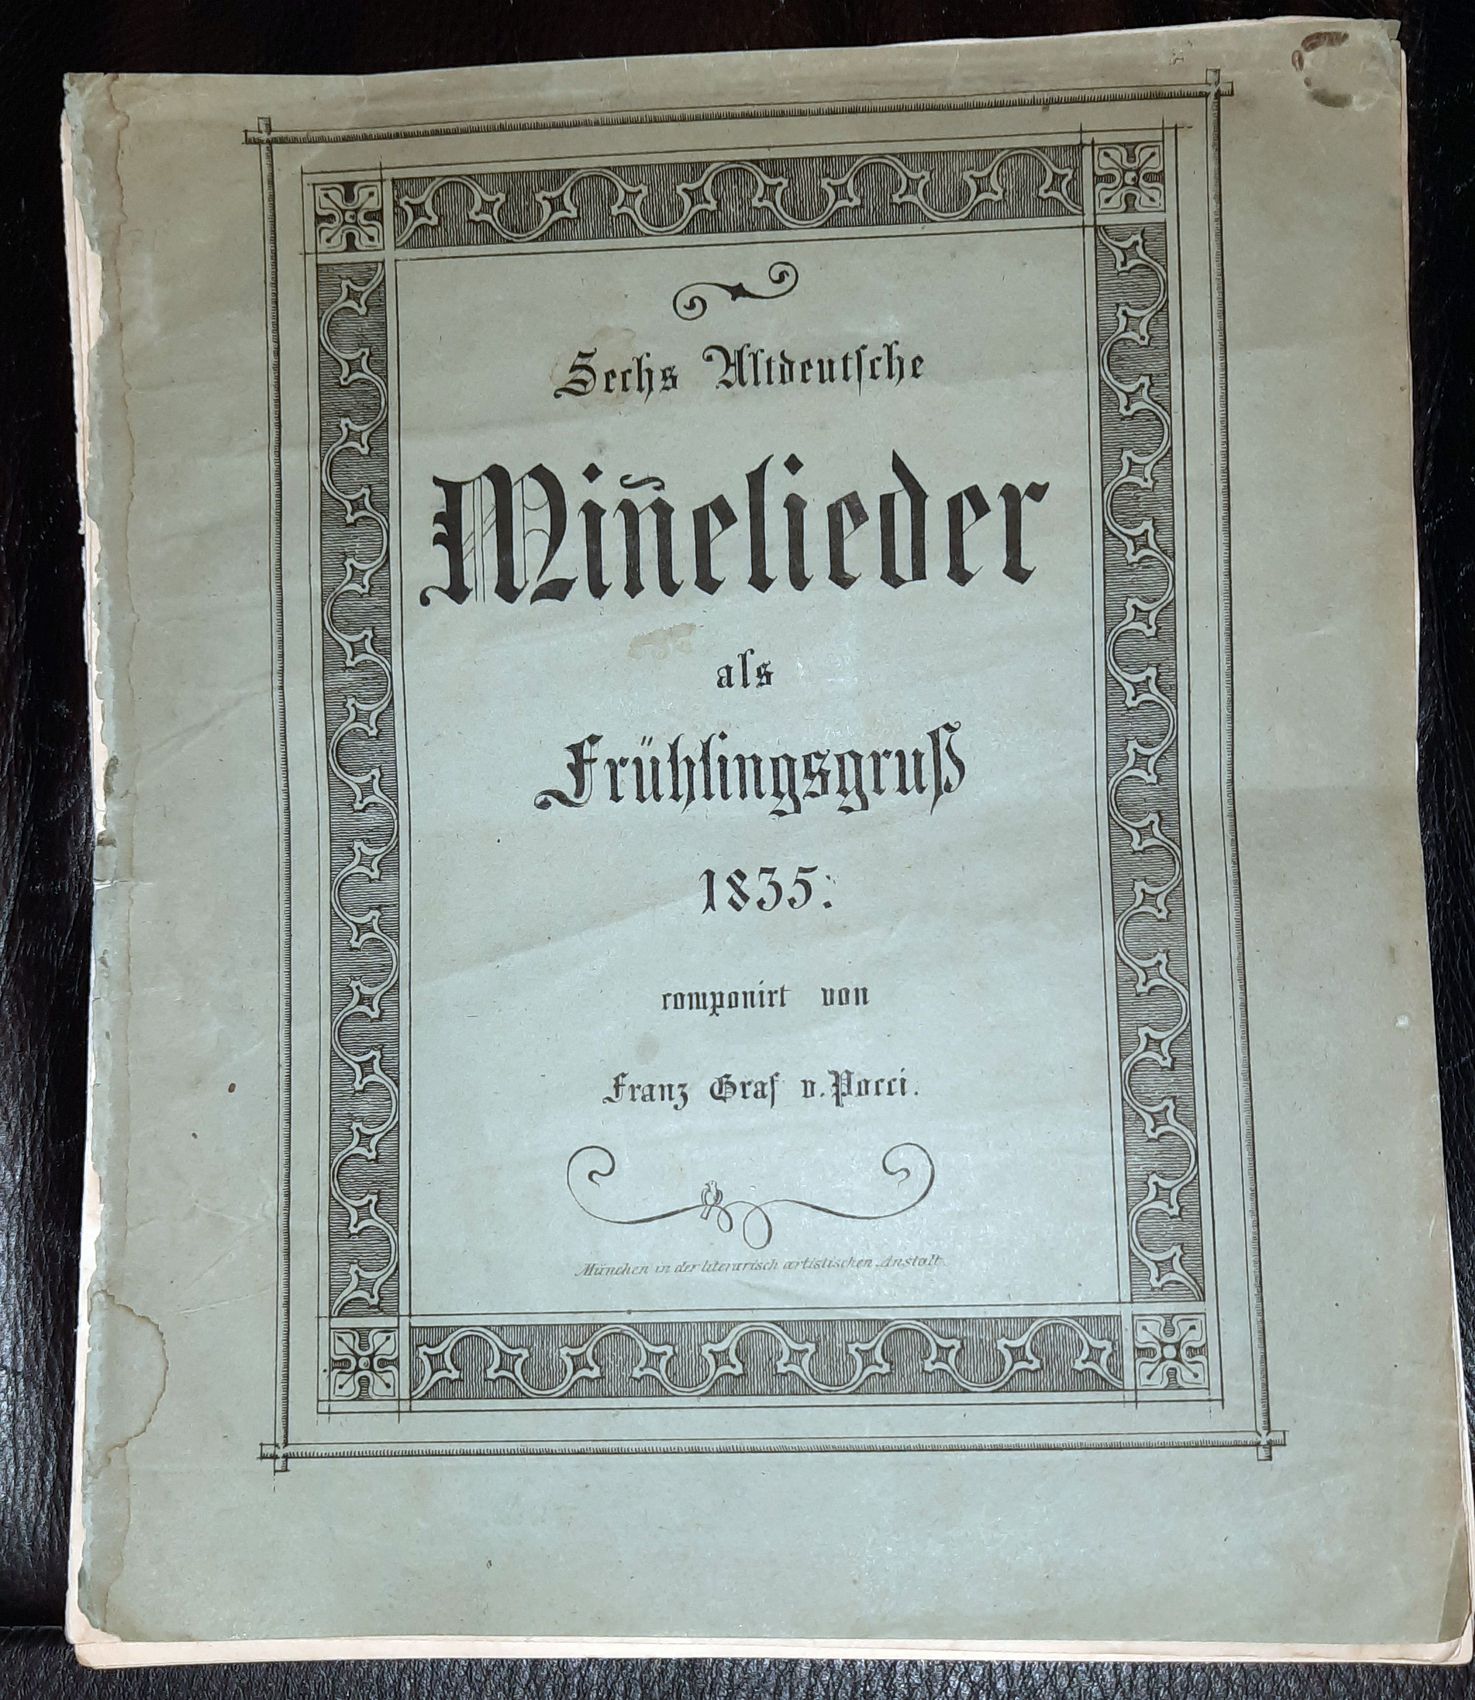 POCCI, FRANZ GRAF VON: - Sechs altdeutsche Minnelieder als Frhlingsgruss 1835 componirt..